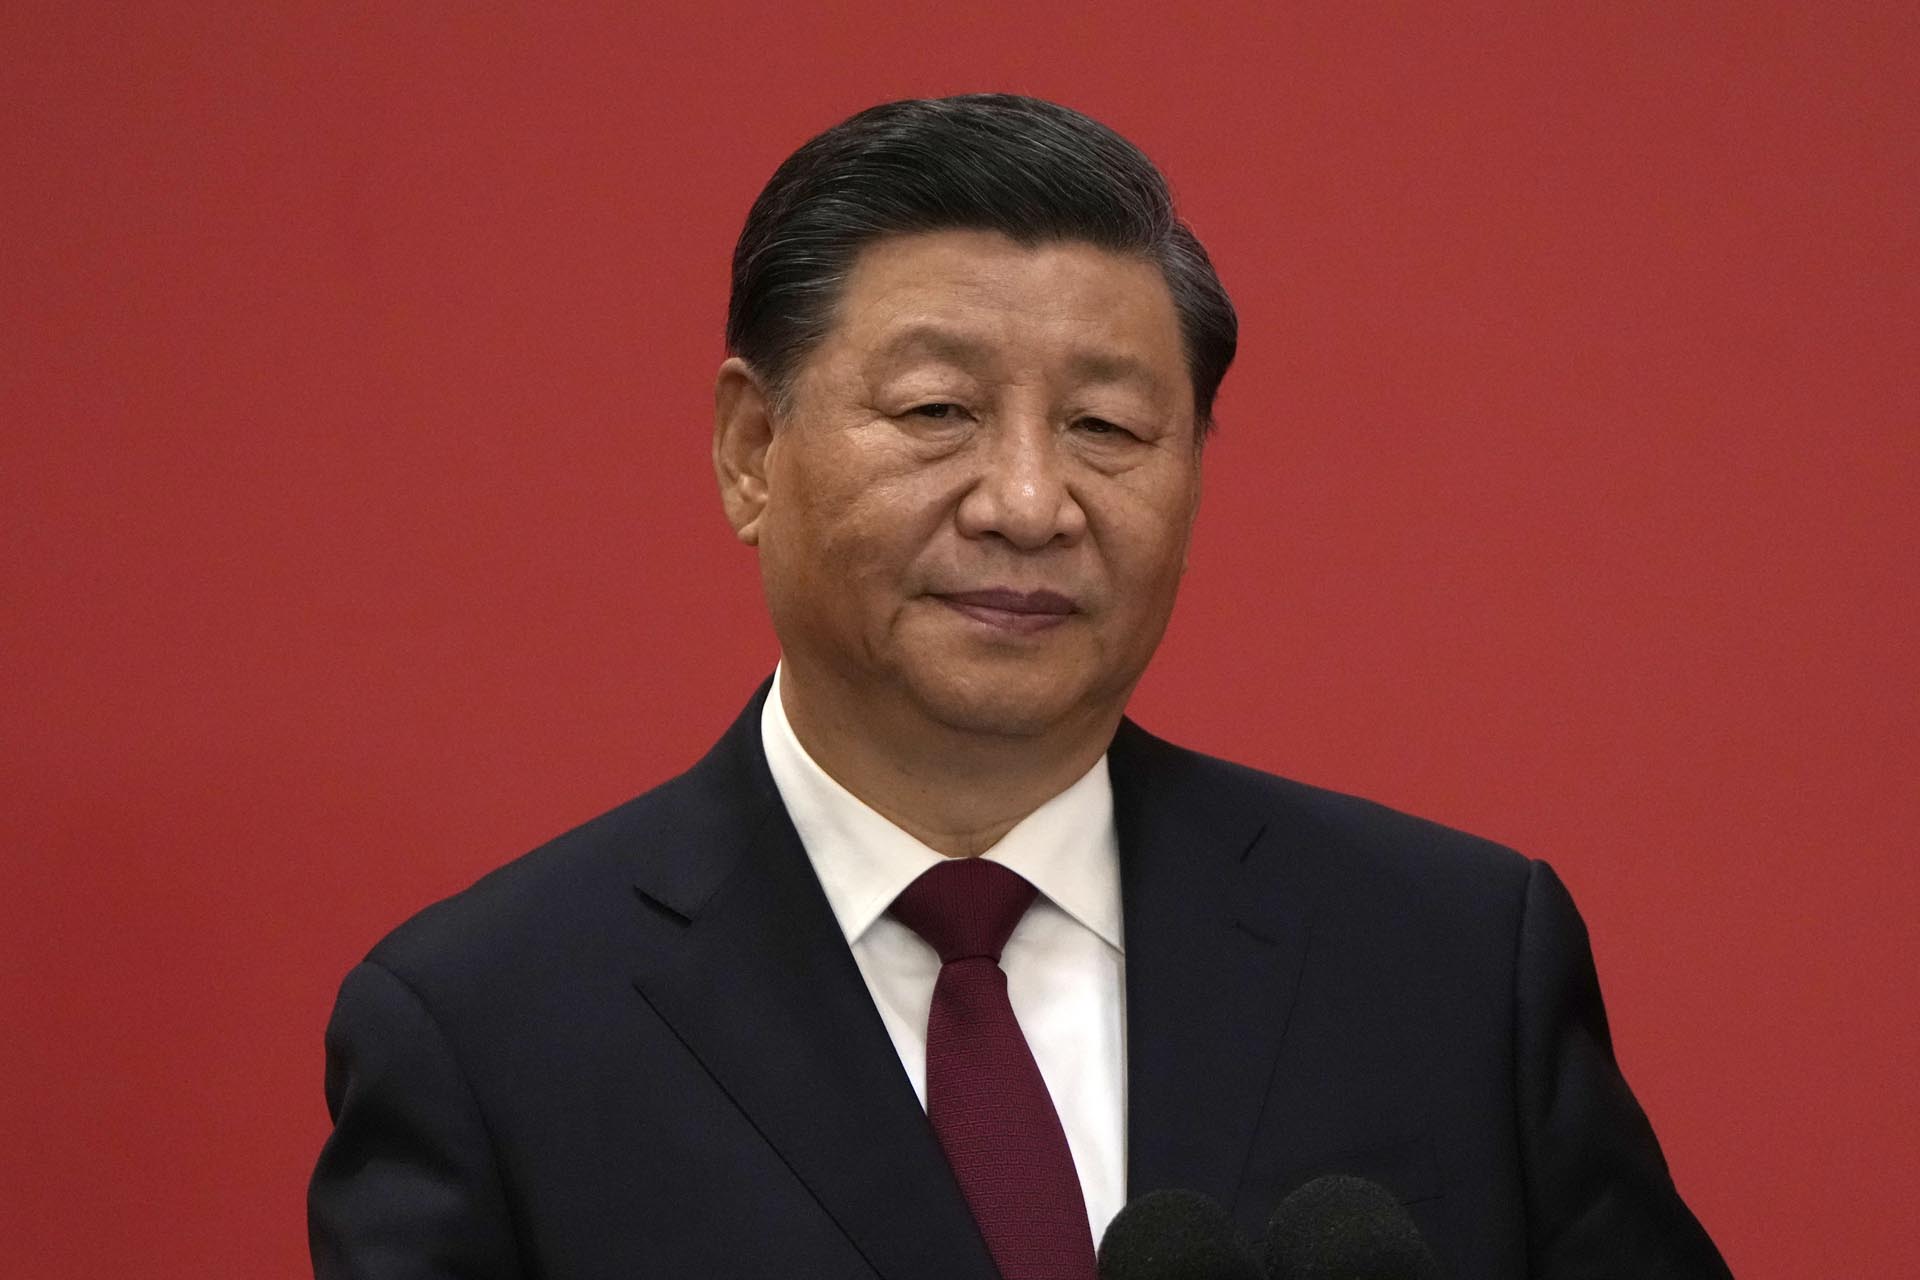 El presidente Xi Jinping asiste a un evento para presentar a los nuevos miembros del Comité Permanente del Politburó en el Gran Palacio del Pueblo en Beijing. (AP Photo/Ng Han Guan)

